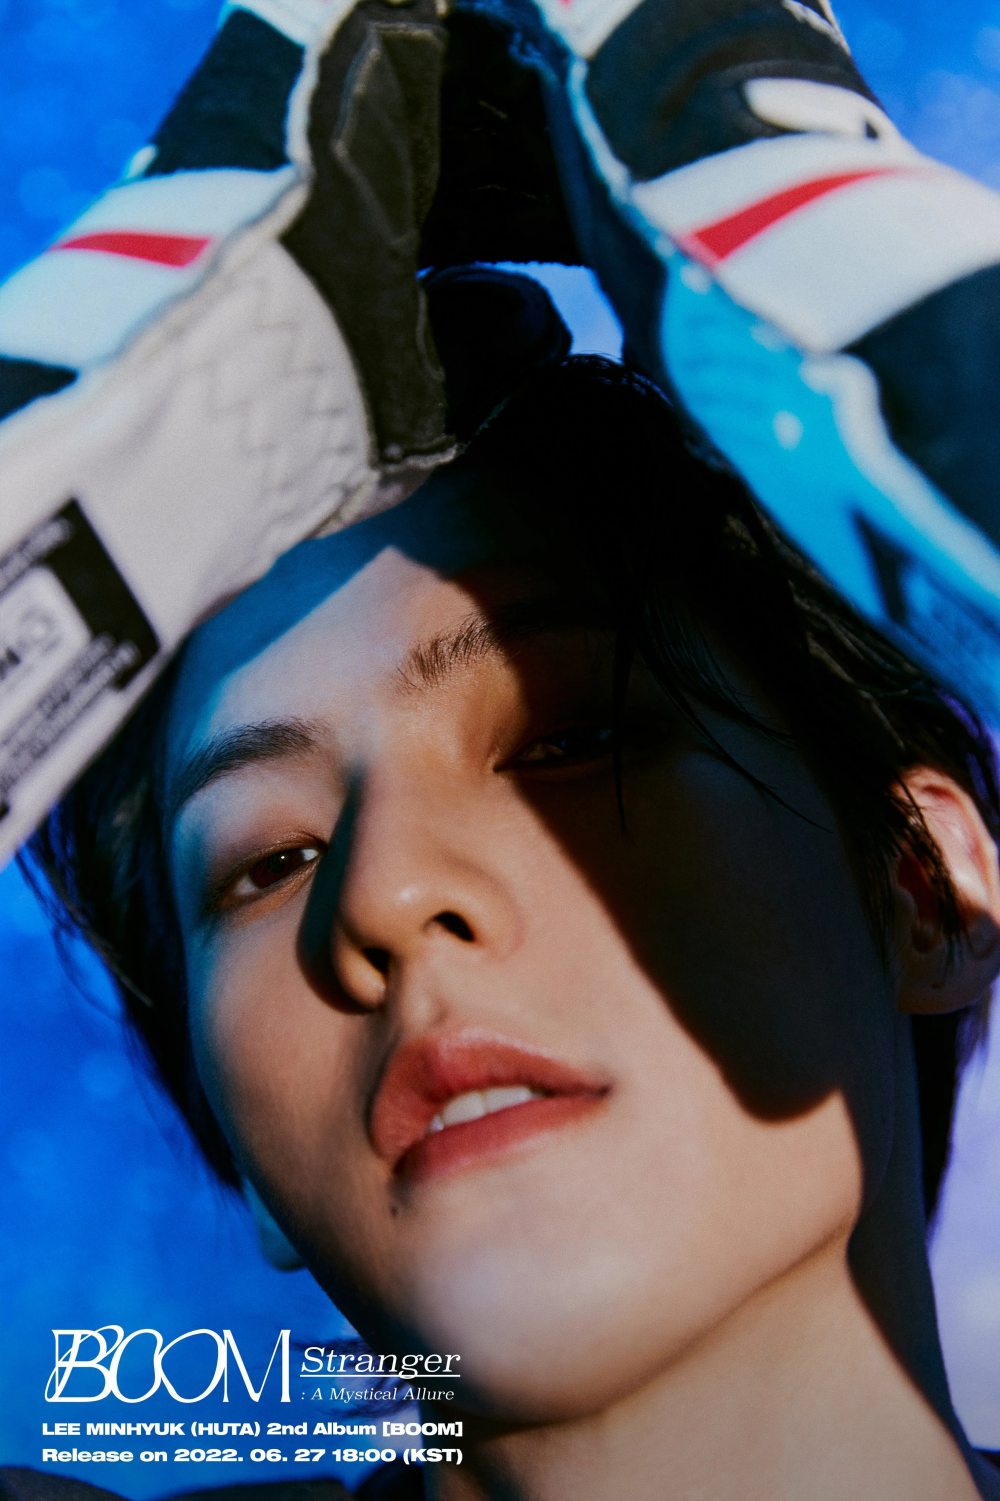 [Камбэк] Минхёк из BTOB альбом «BOOM»: музыкальный клип